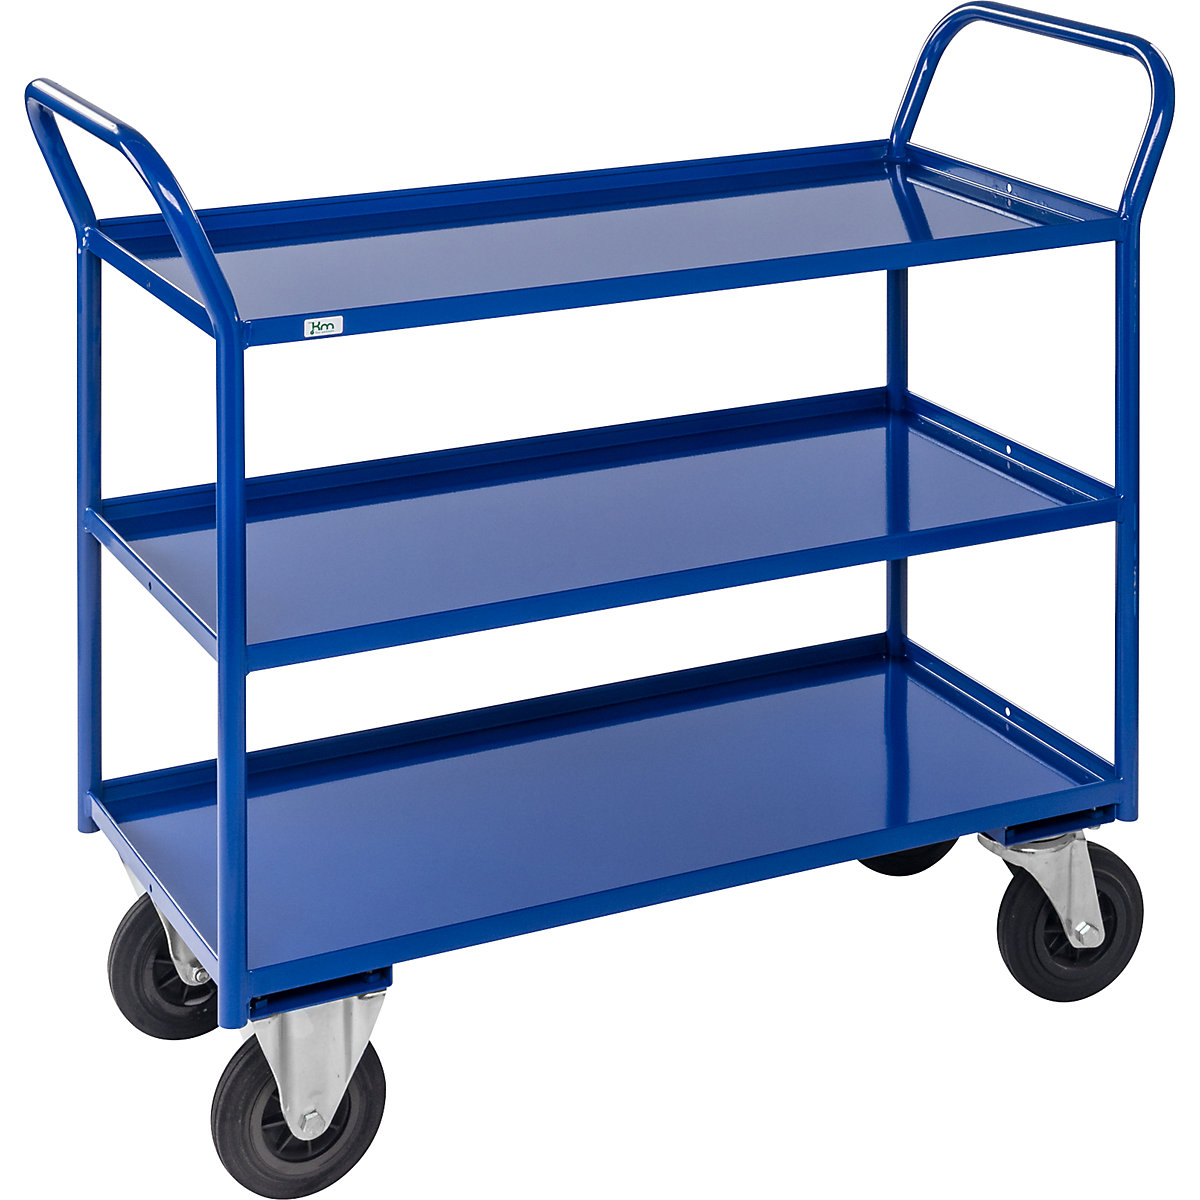 Stolový vozík KM41 – Kongamek, 3 etáže se zvýšenou hranou, d x š x v 1080 x 450 x 1000 mm, modrá, 2 otočná kola s brzdou, 2 pevná kola, od 5 kusů-4